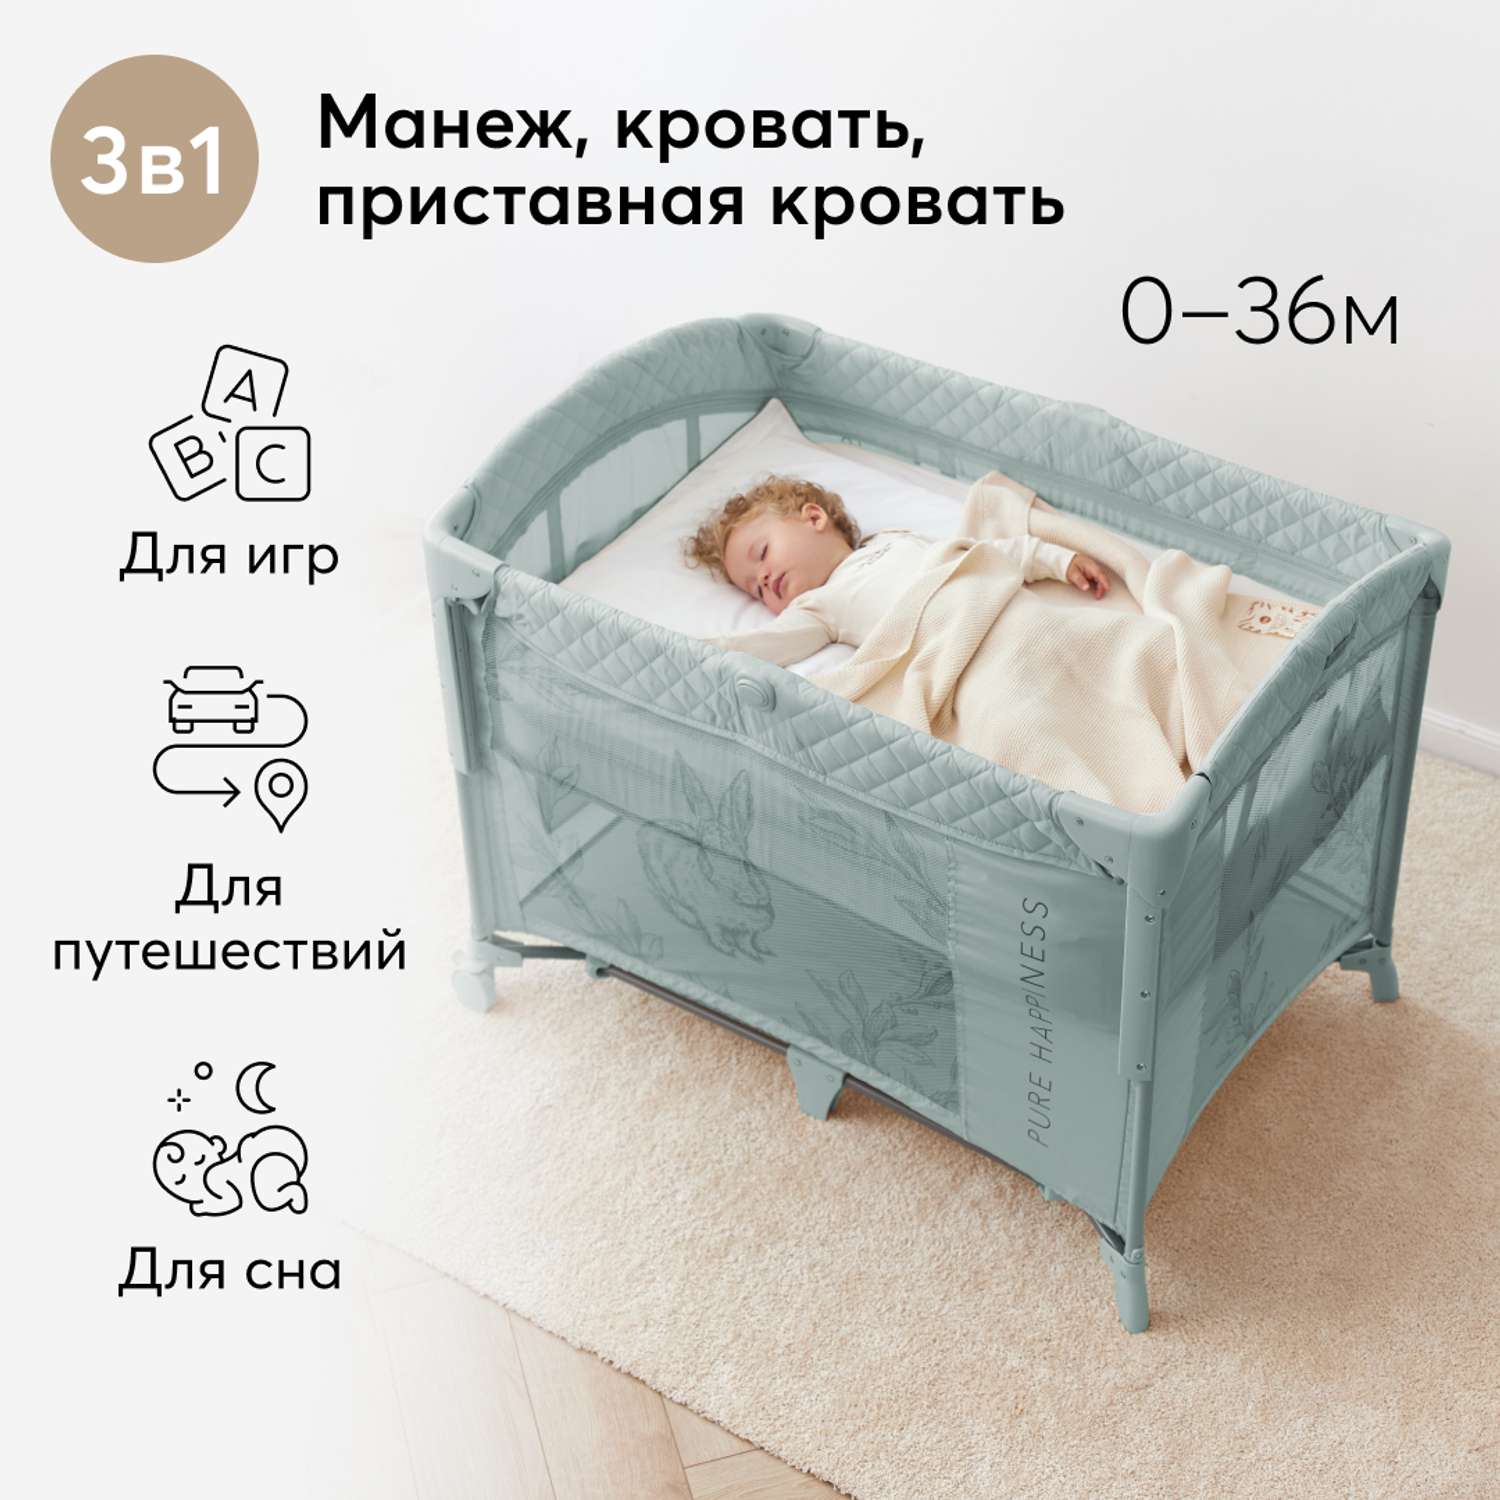 Кровать манеж happy baby детский мир